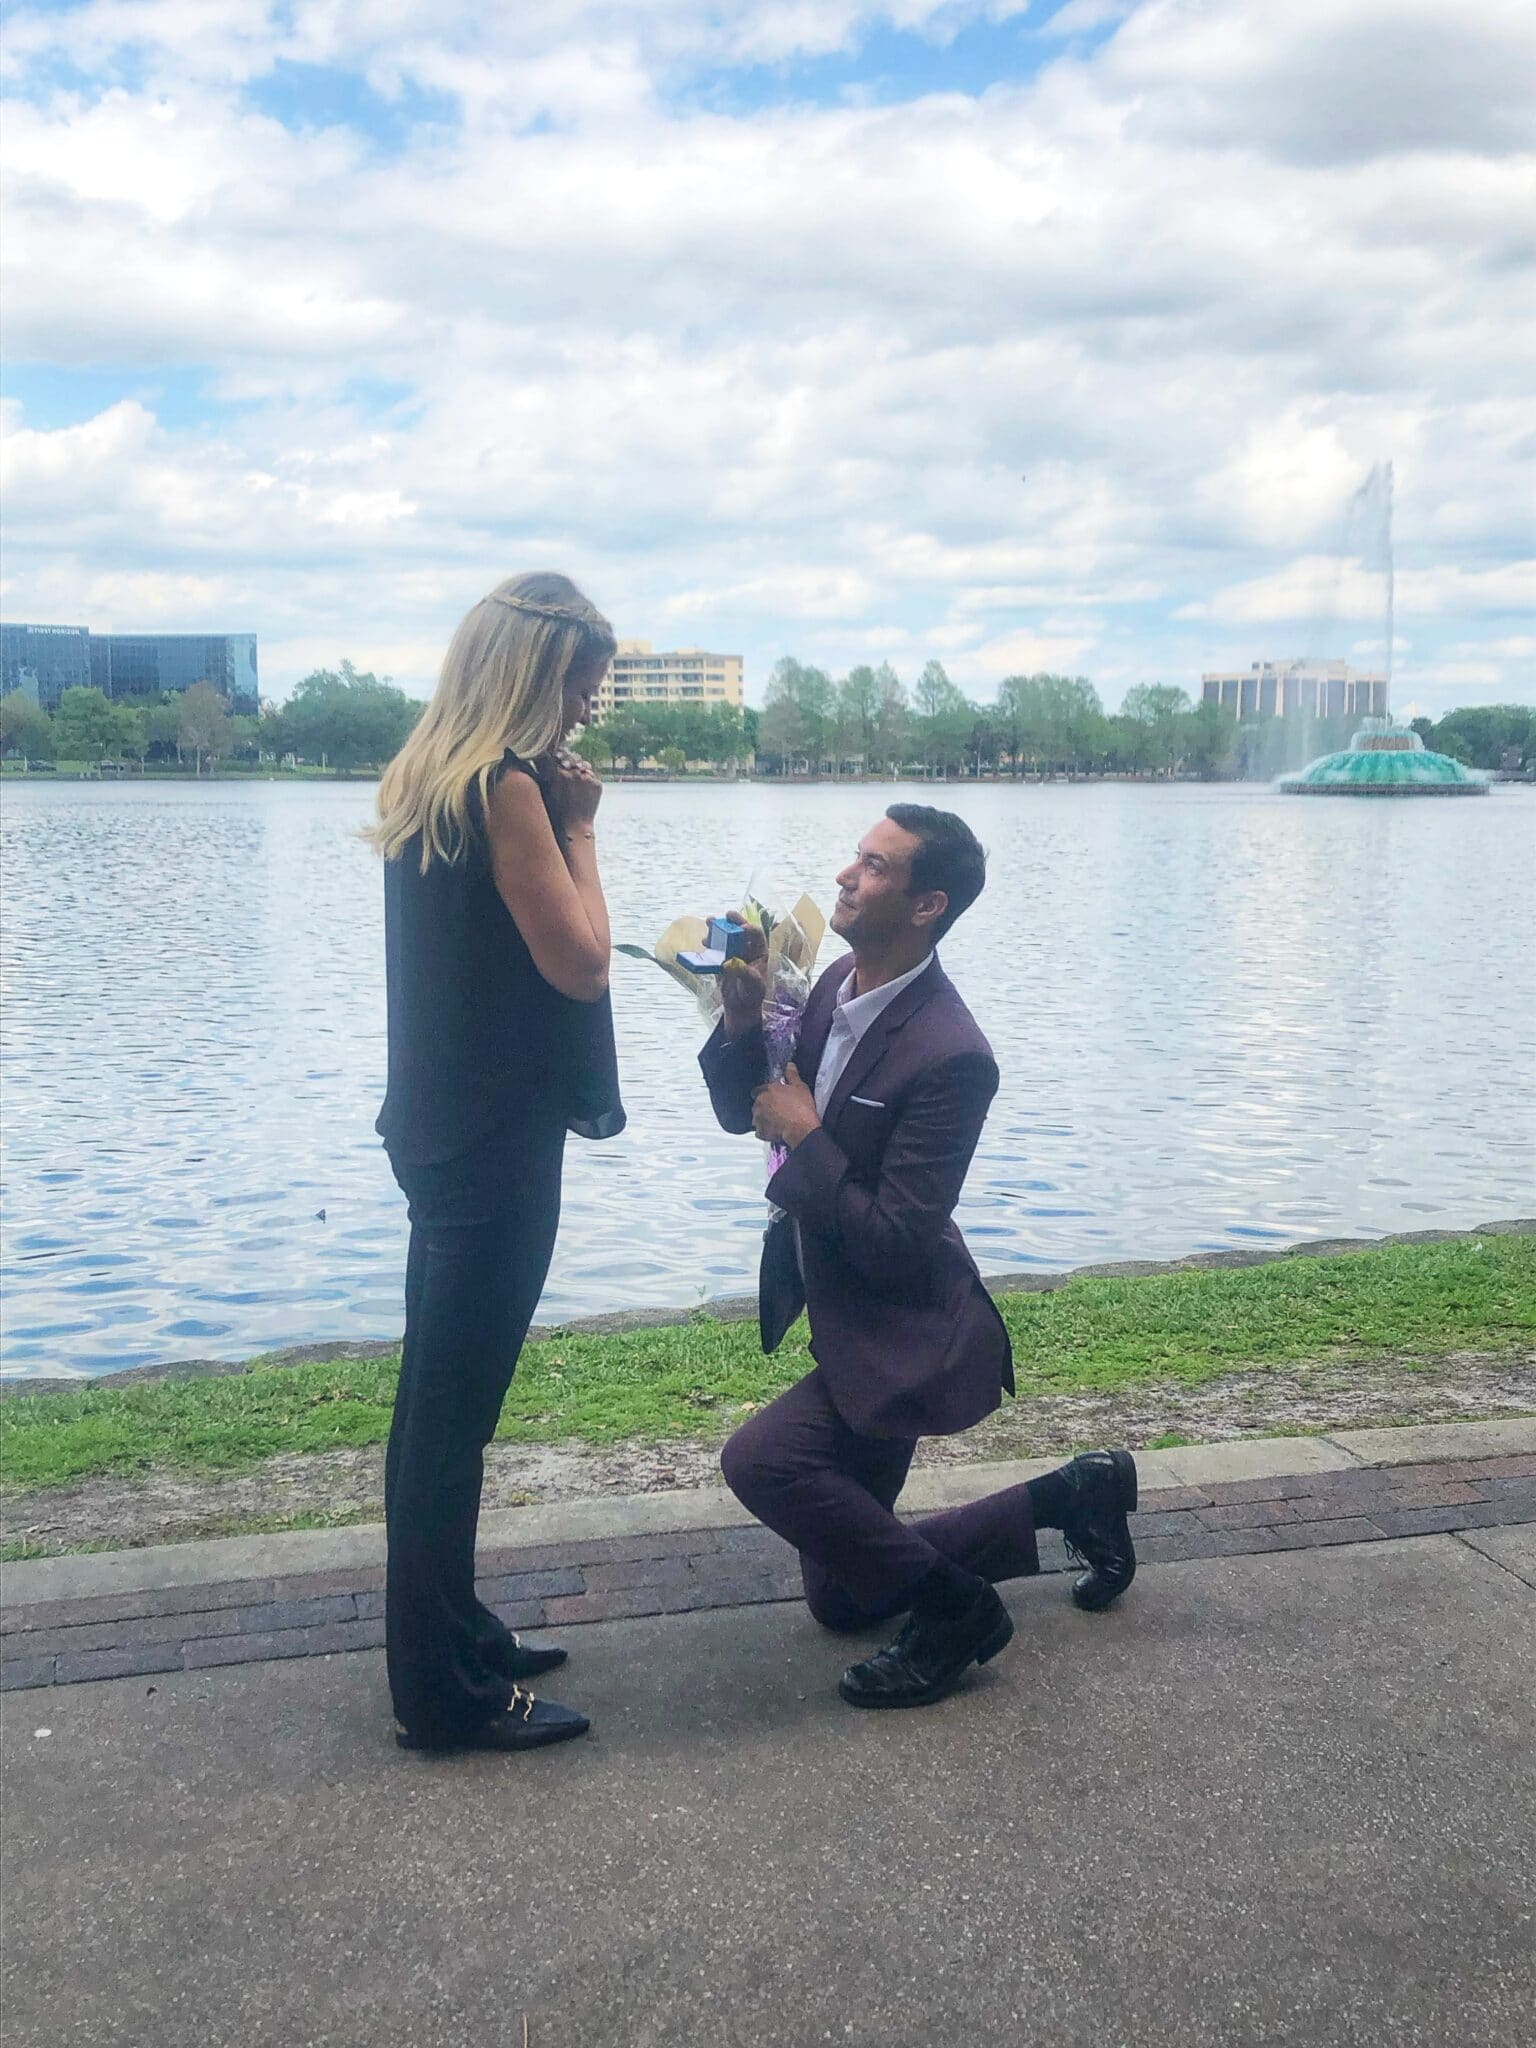 Man kneeling and proposing at Lake Eola, in Orlando, FL